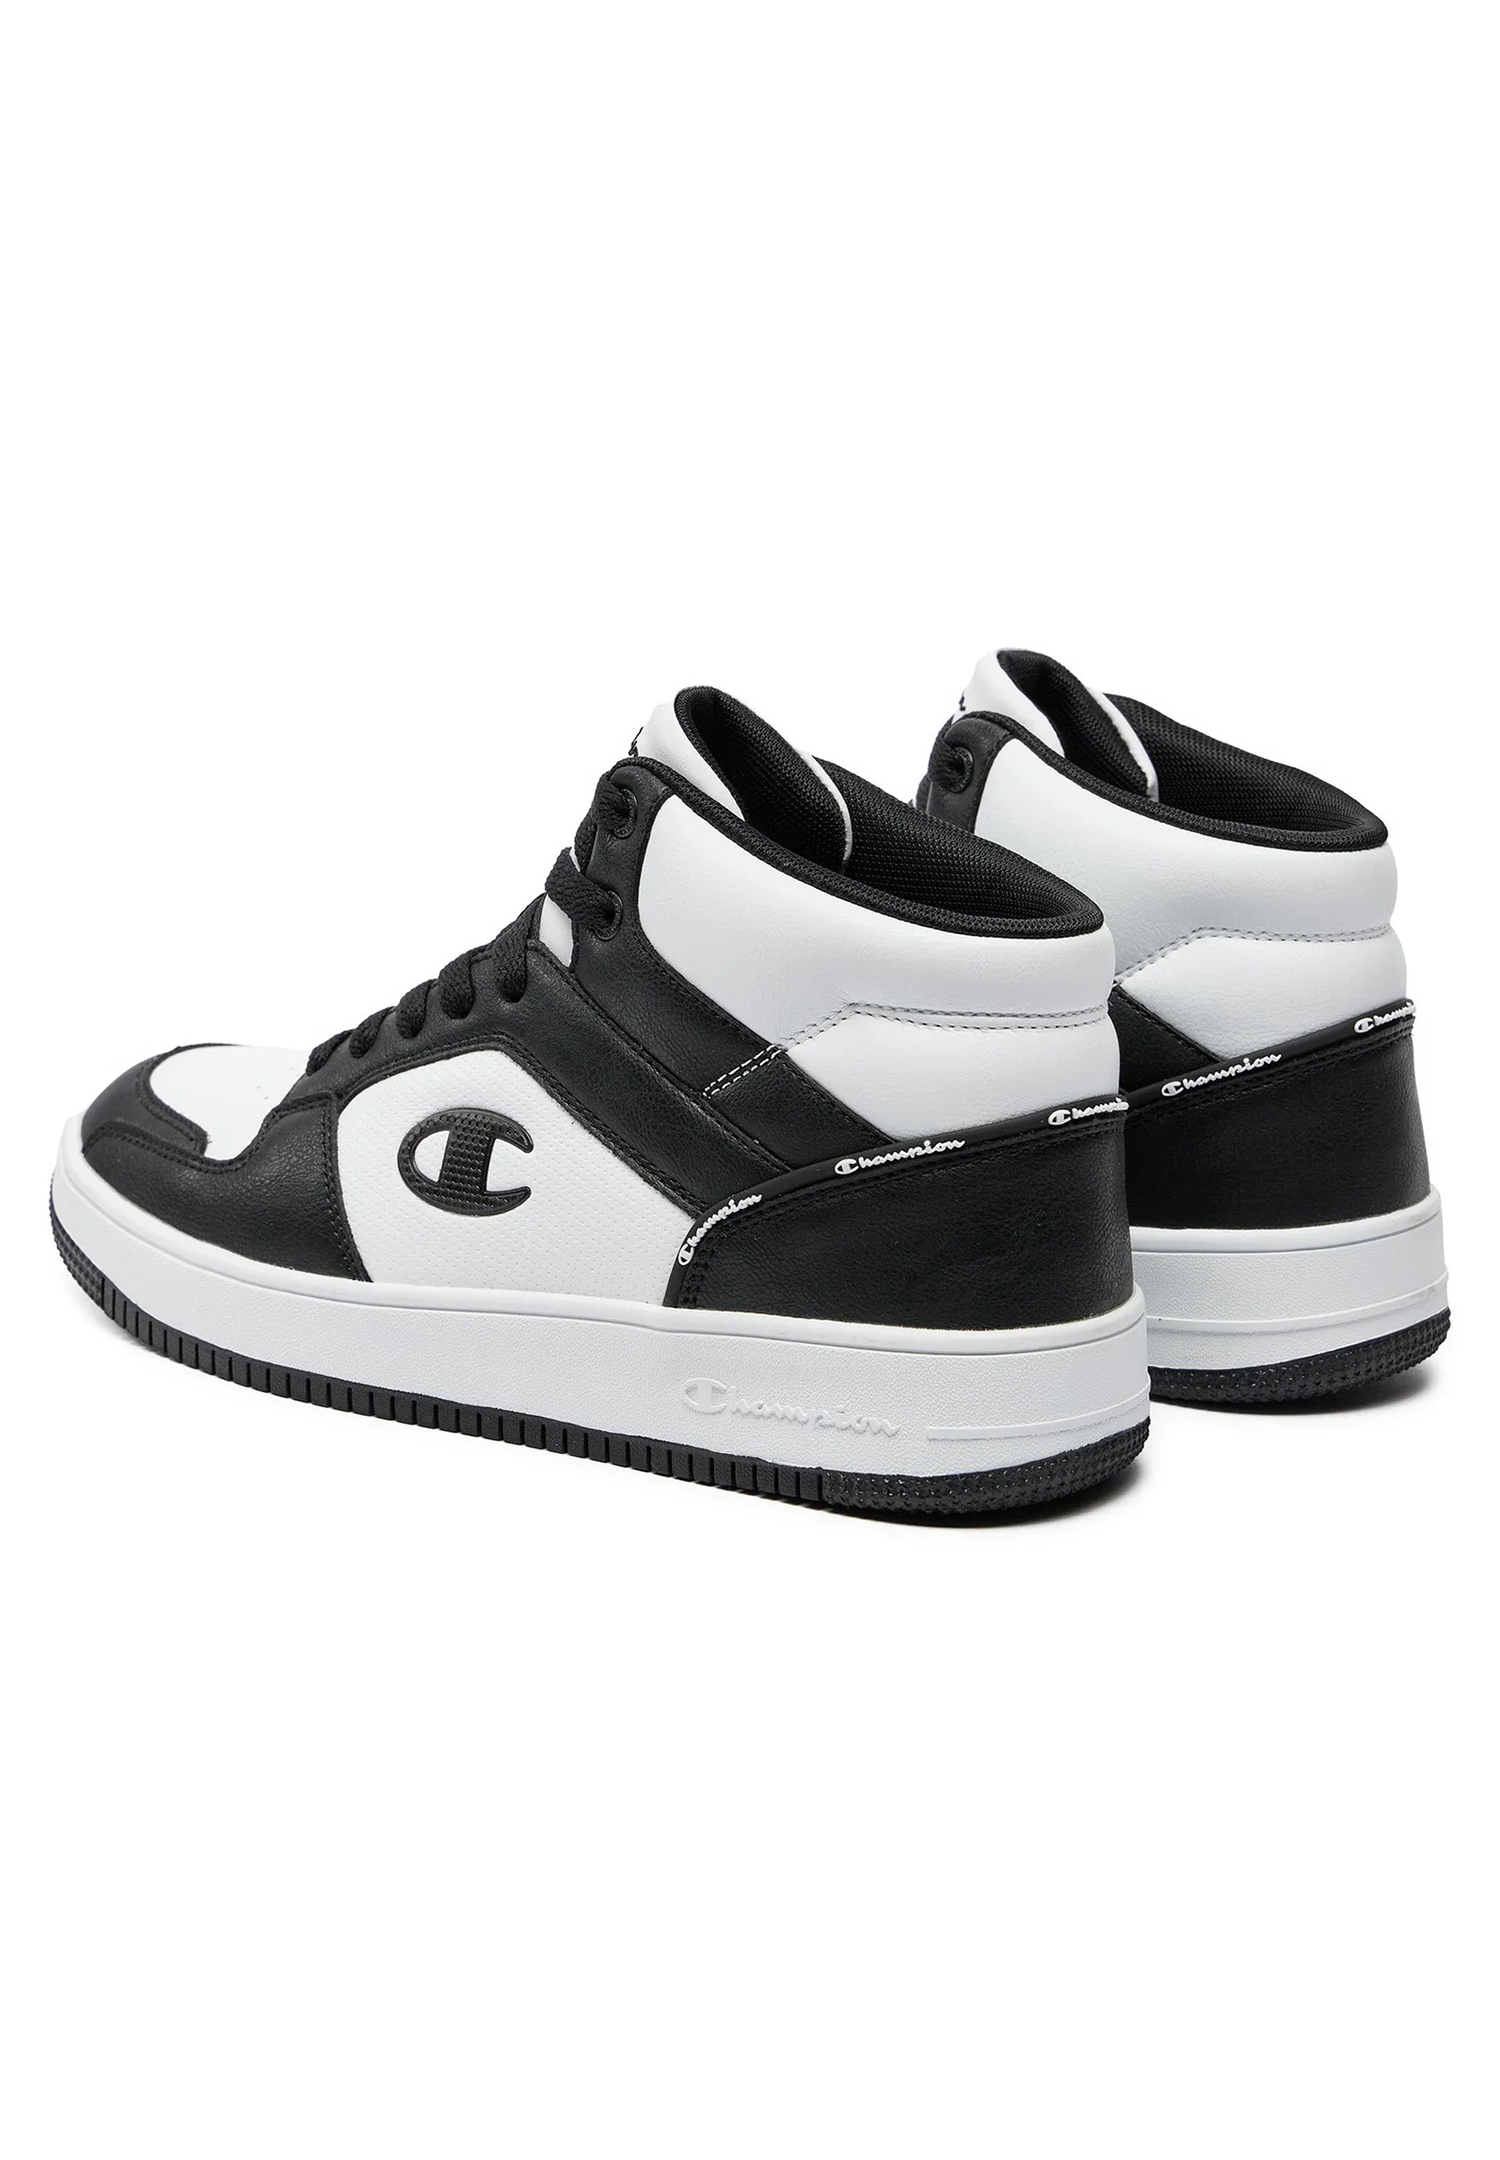 Champion REBOUND 2.0 MID Herren Sneaker S21907-CHA-WW019  weiß/schwarz 